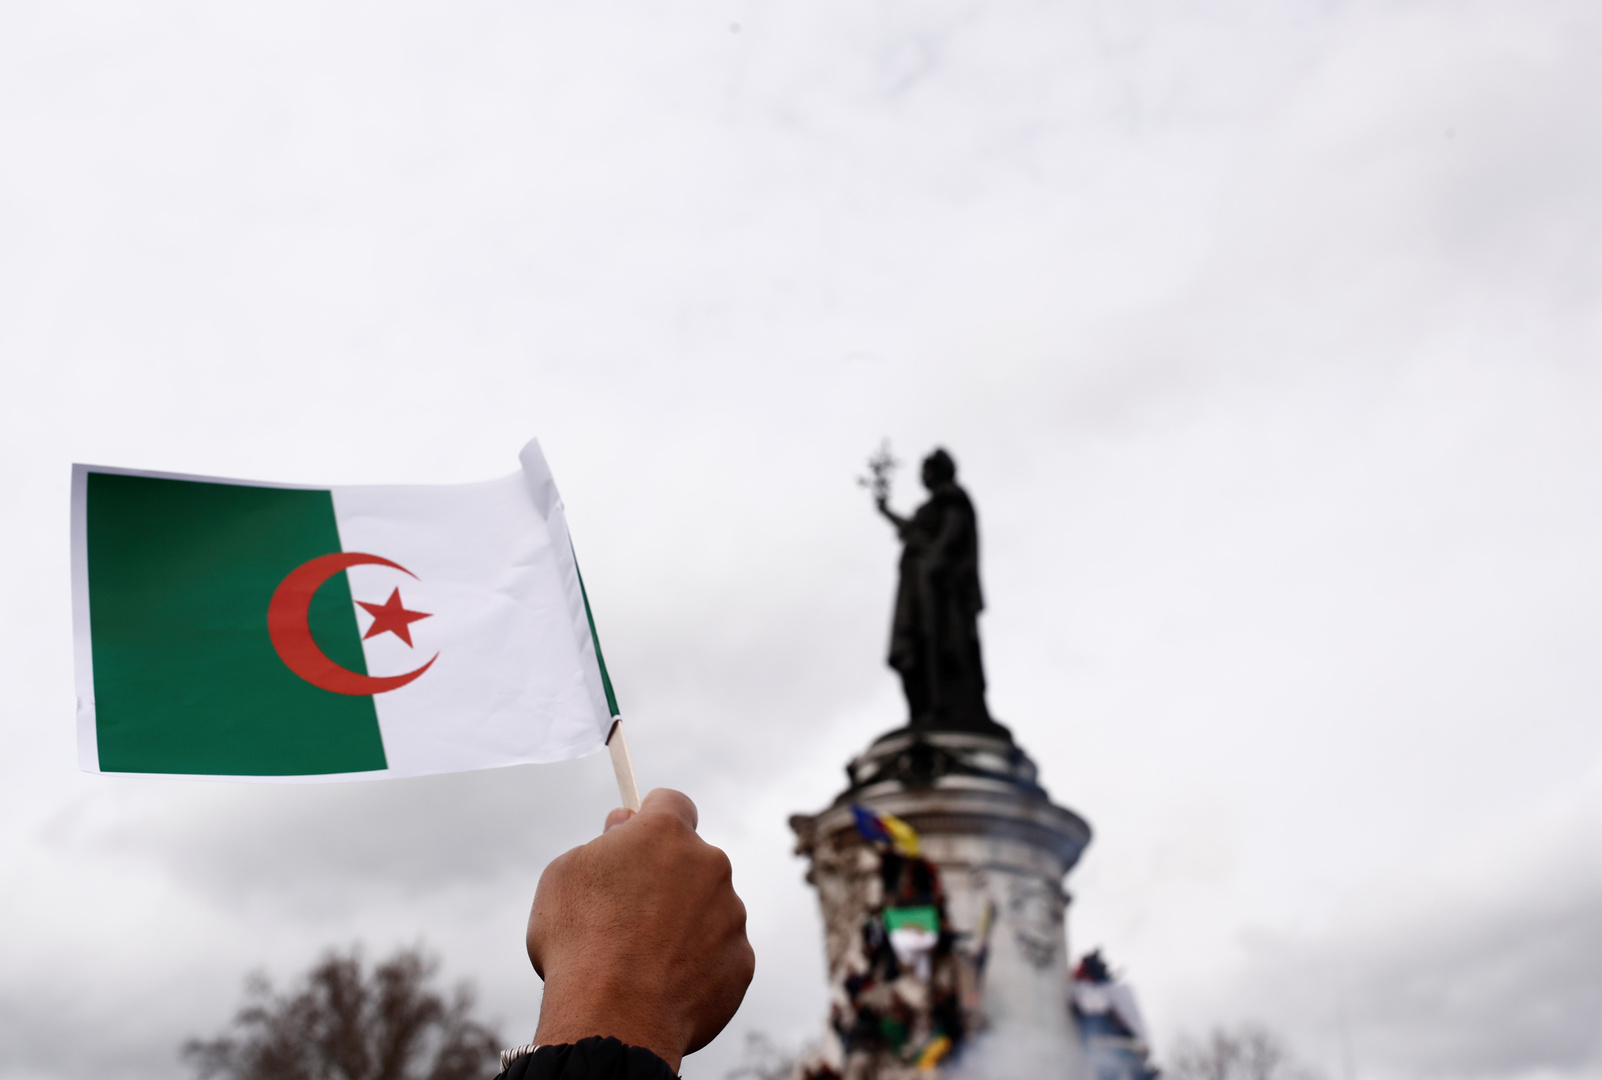 الجزائر ردا على اتهامات تمويلها ميليشيات في مالي: صدرت عن وسيلة إعلامية موالية للمخابرات الفرنسية